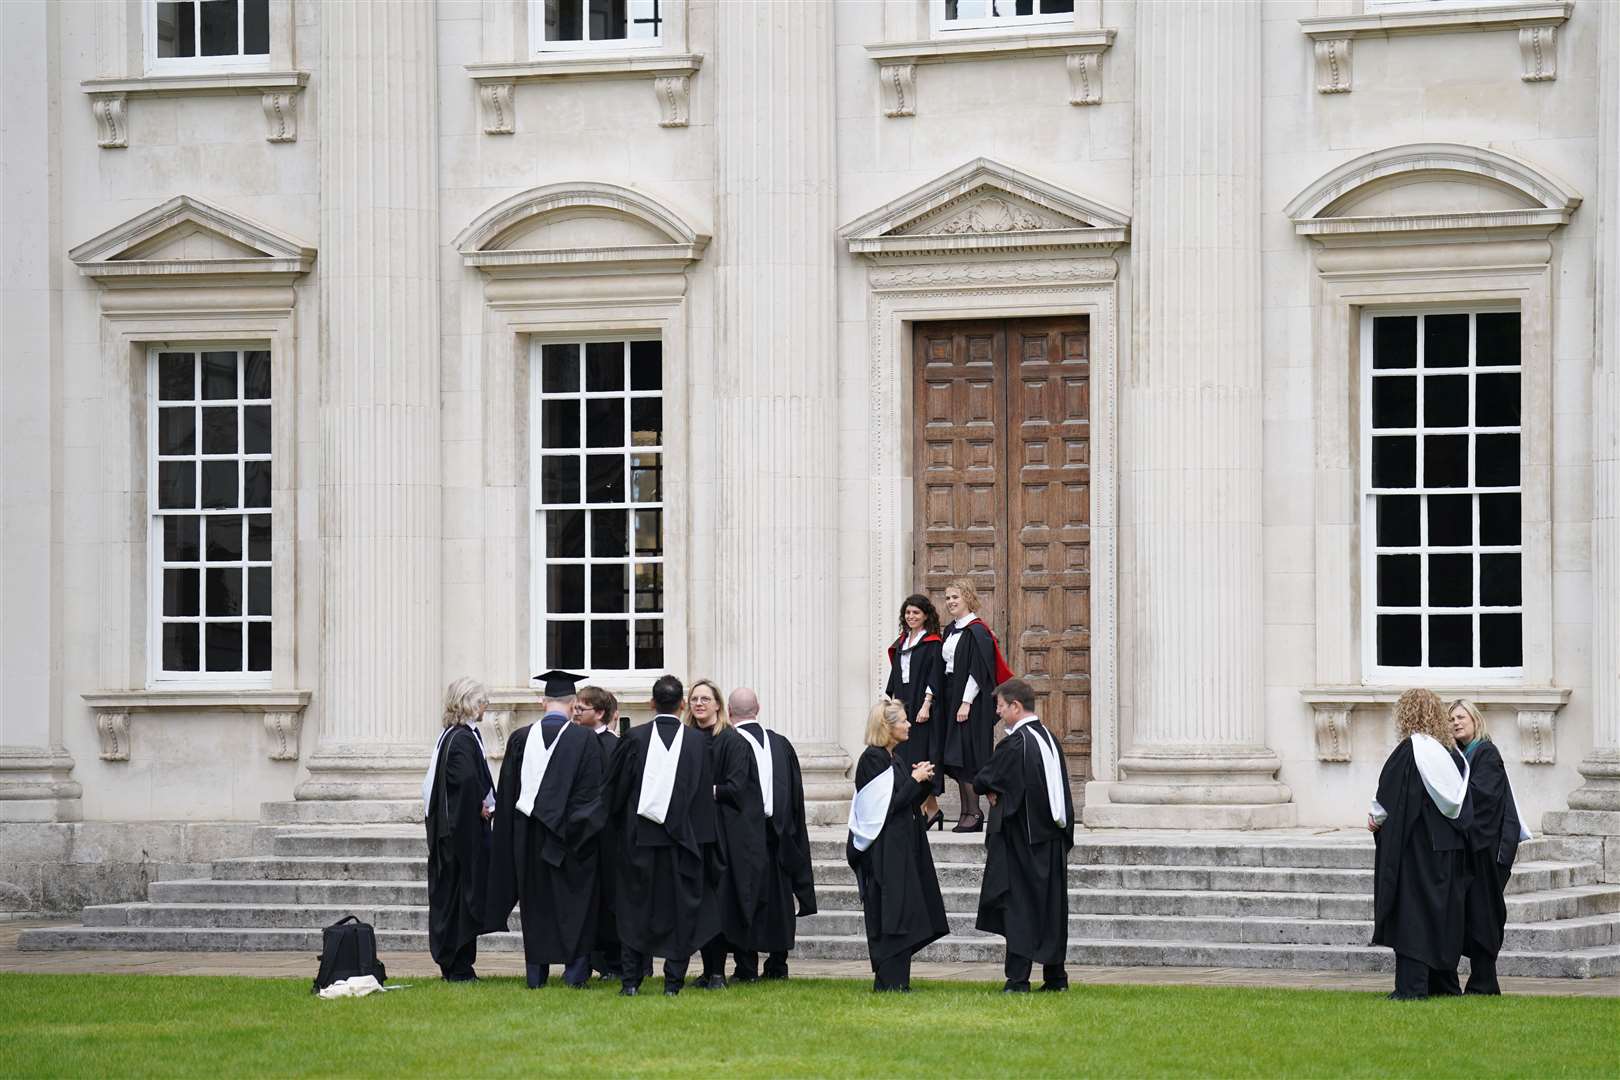 Graduating students take photos outside Senate House at Cambridge University (Joe Giddens/PA)